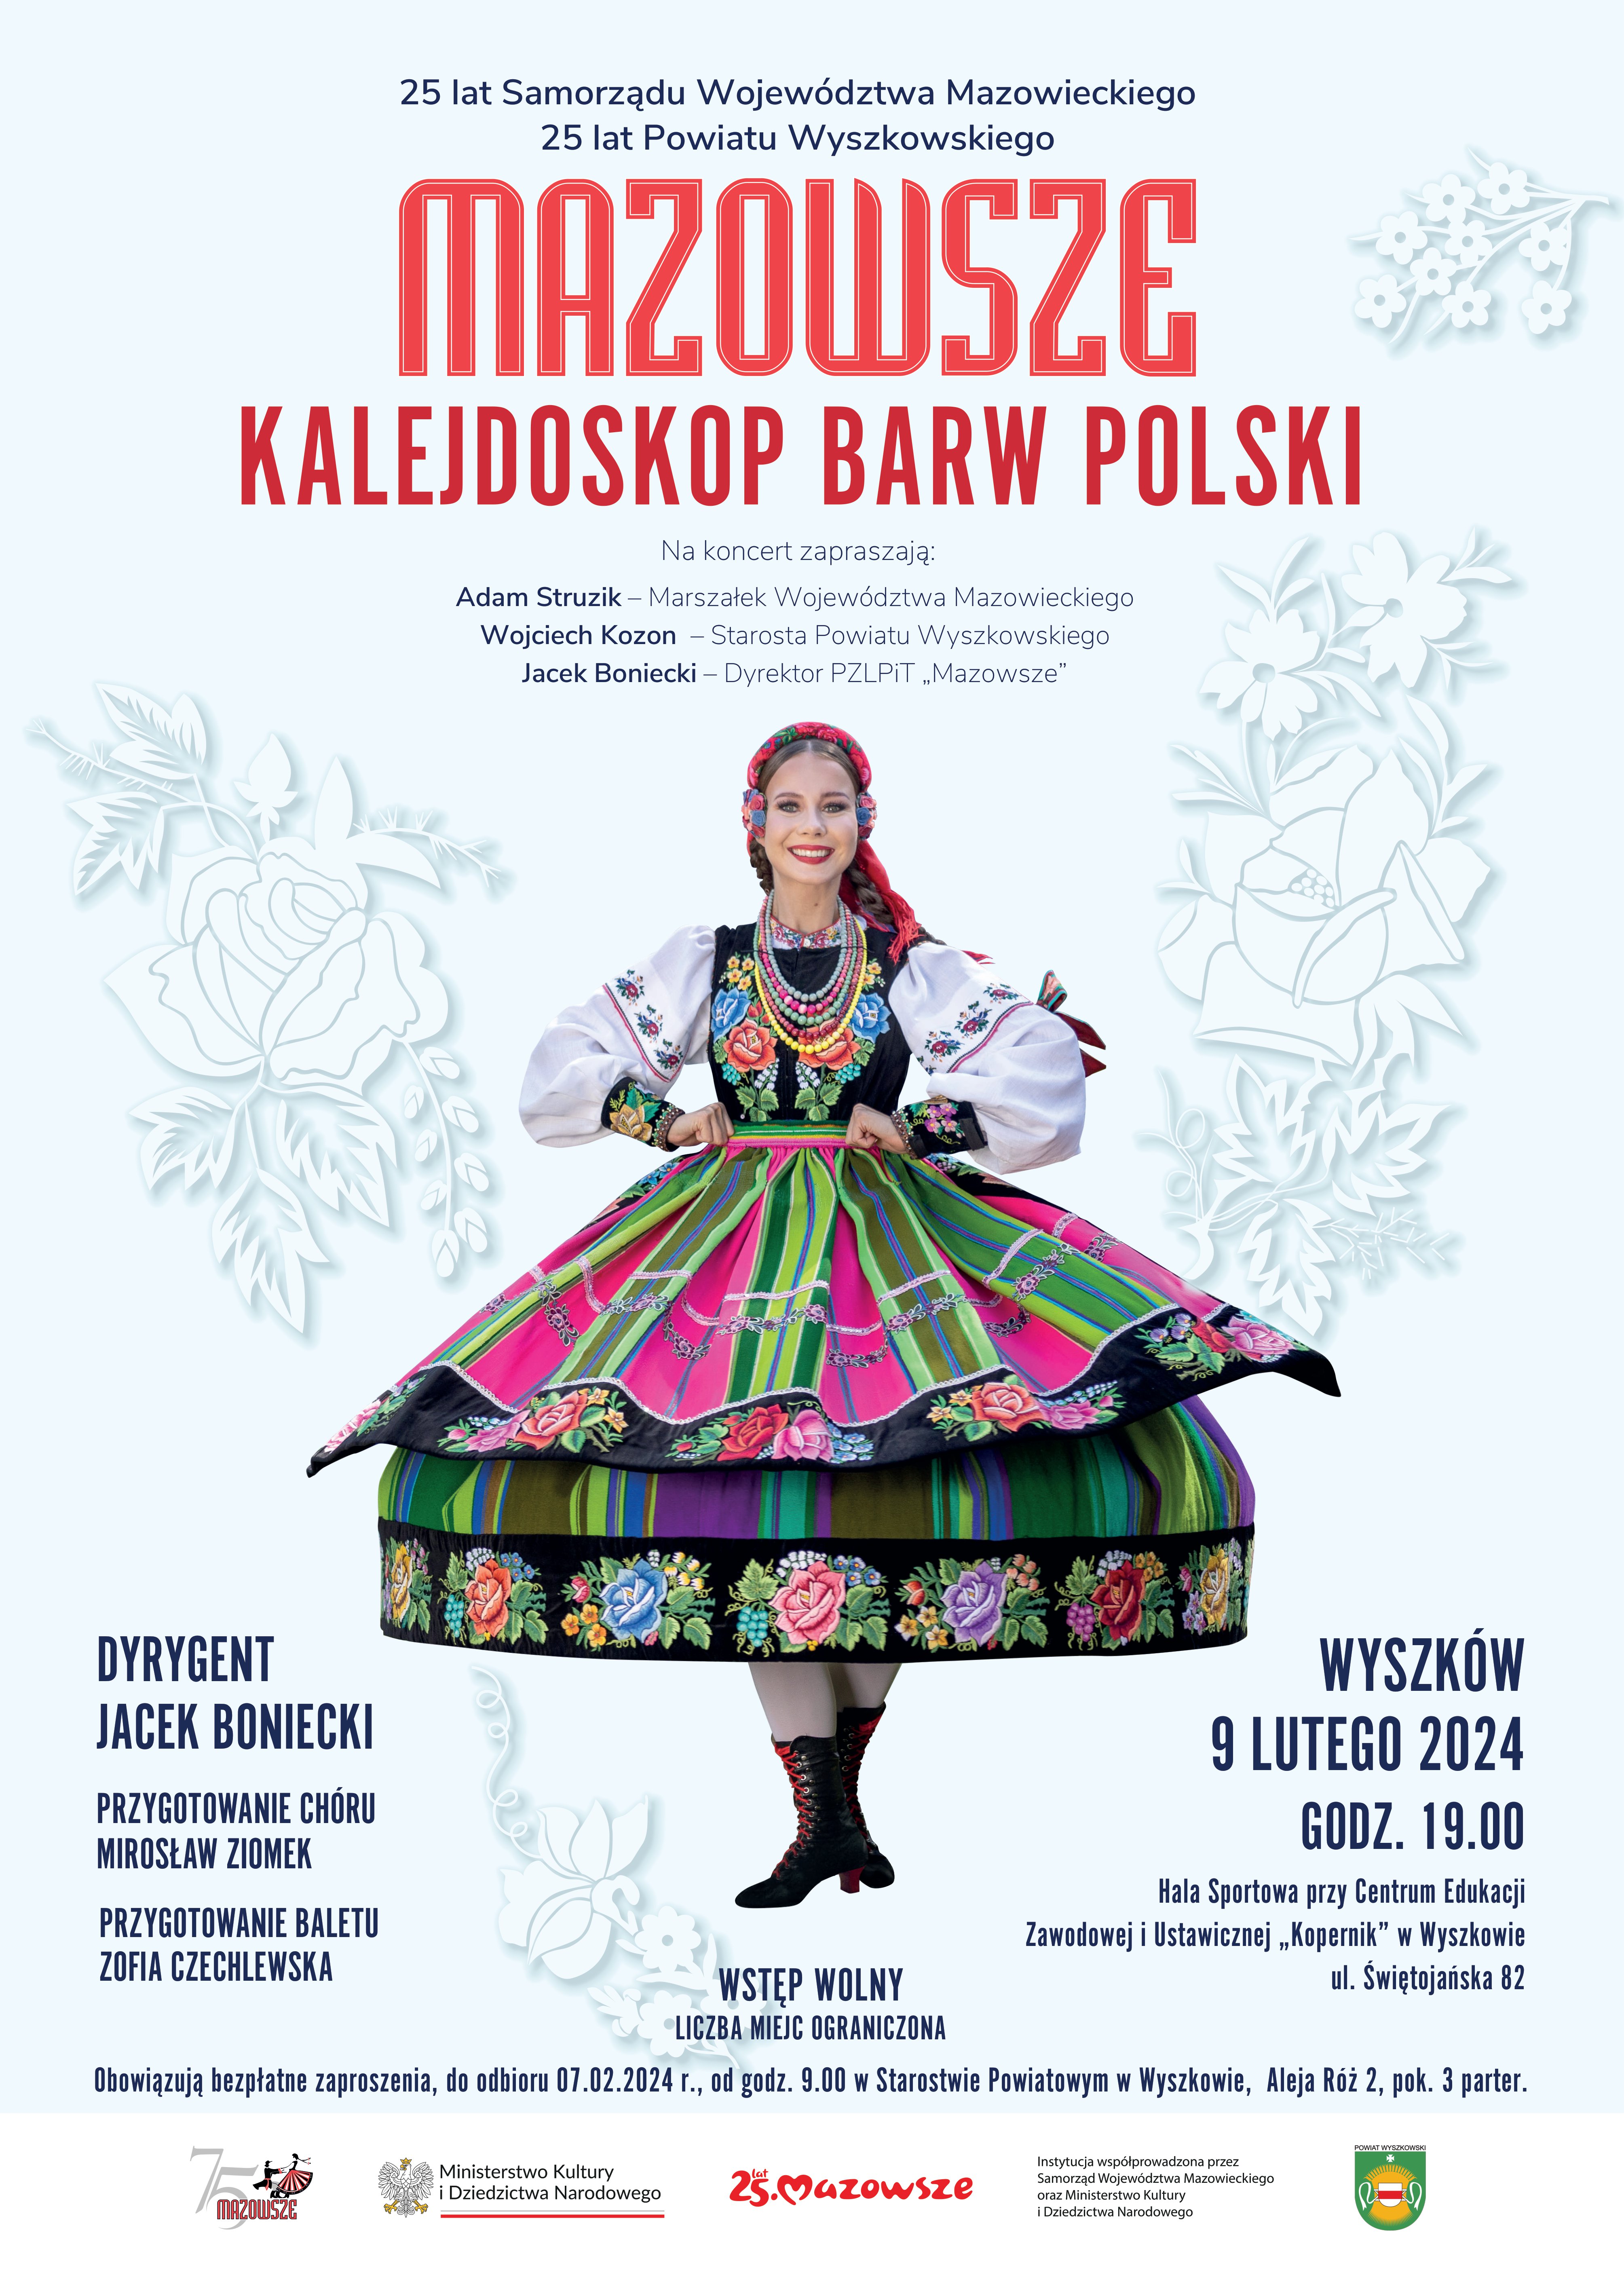 KALEJDOSKOP BARW POLSKI_Wyszkow - plakat - A3.jpg (1.87 MB)